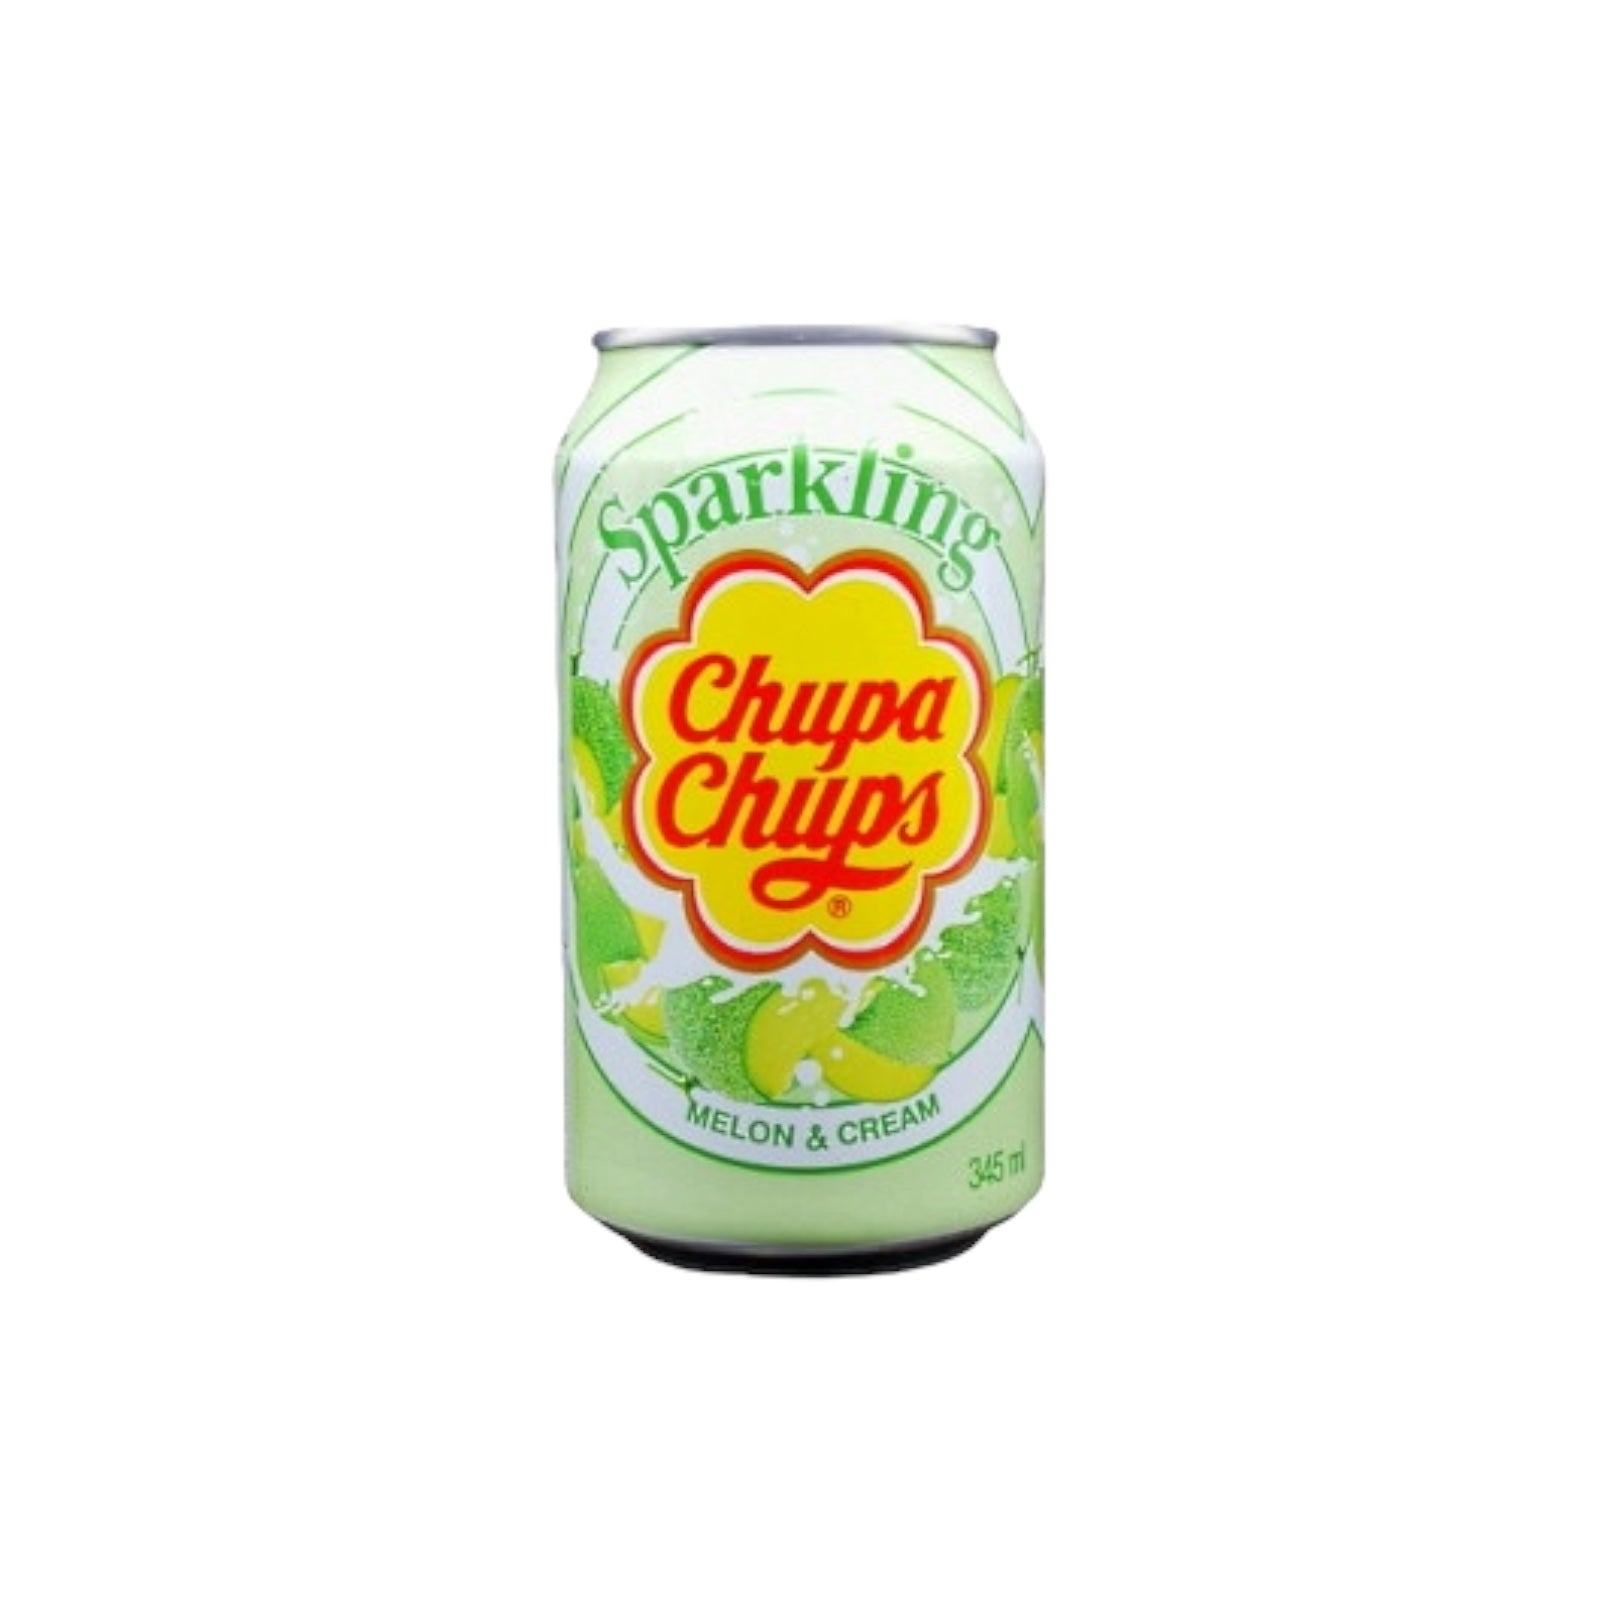 Sparkling Melon Cream Flavour Drink / Soda CHUPA CHUPS
345ml